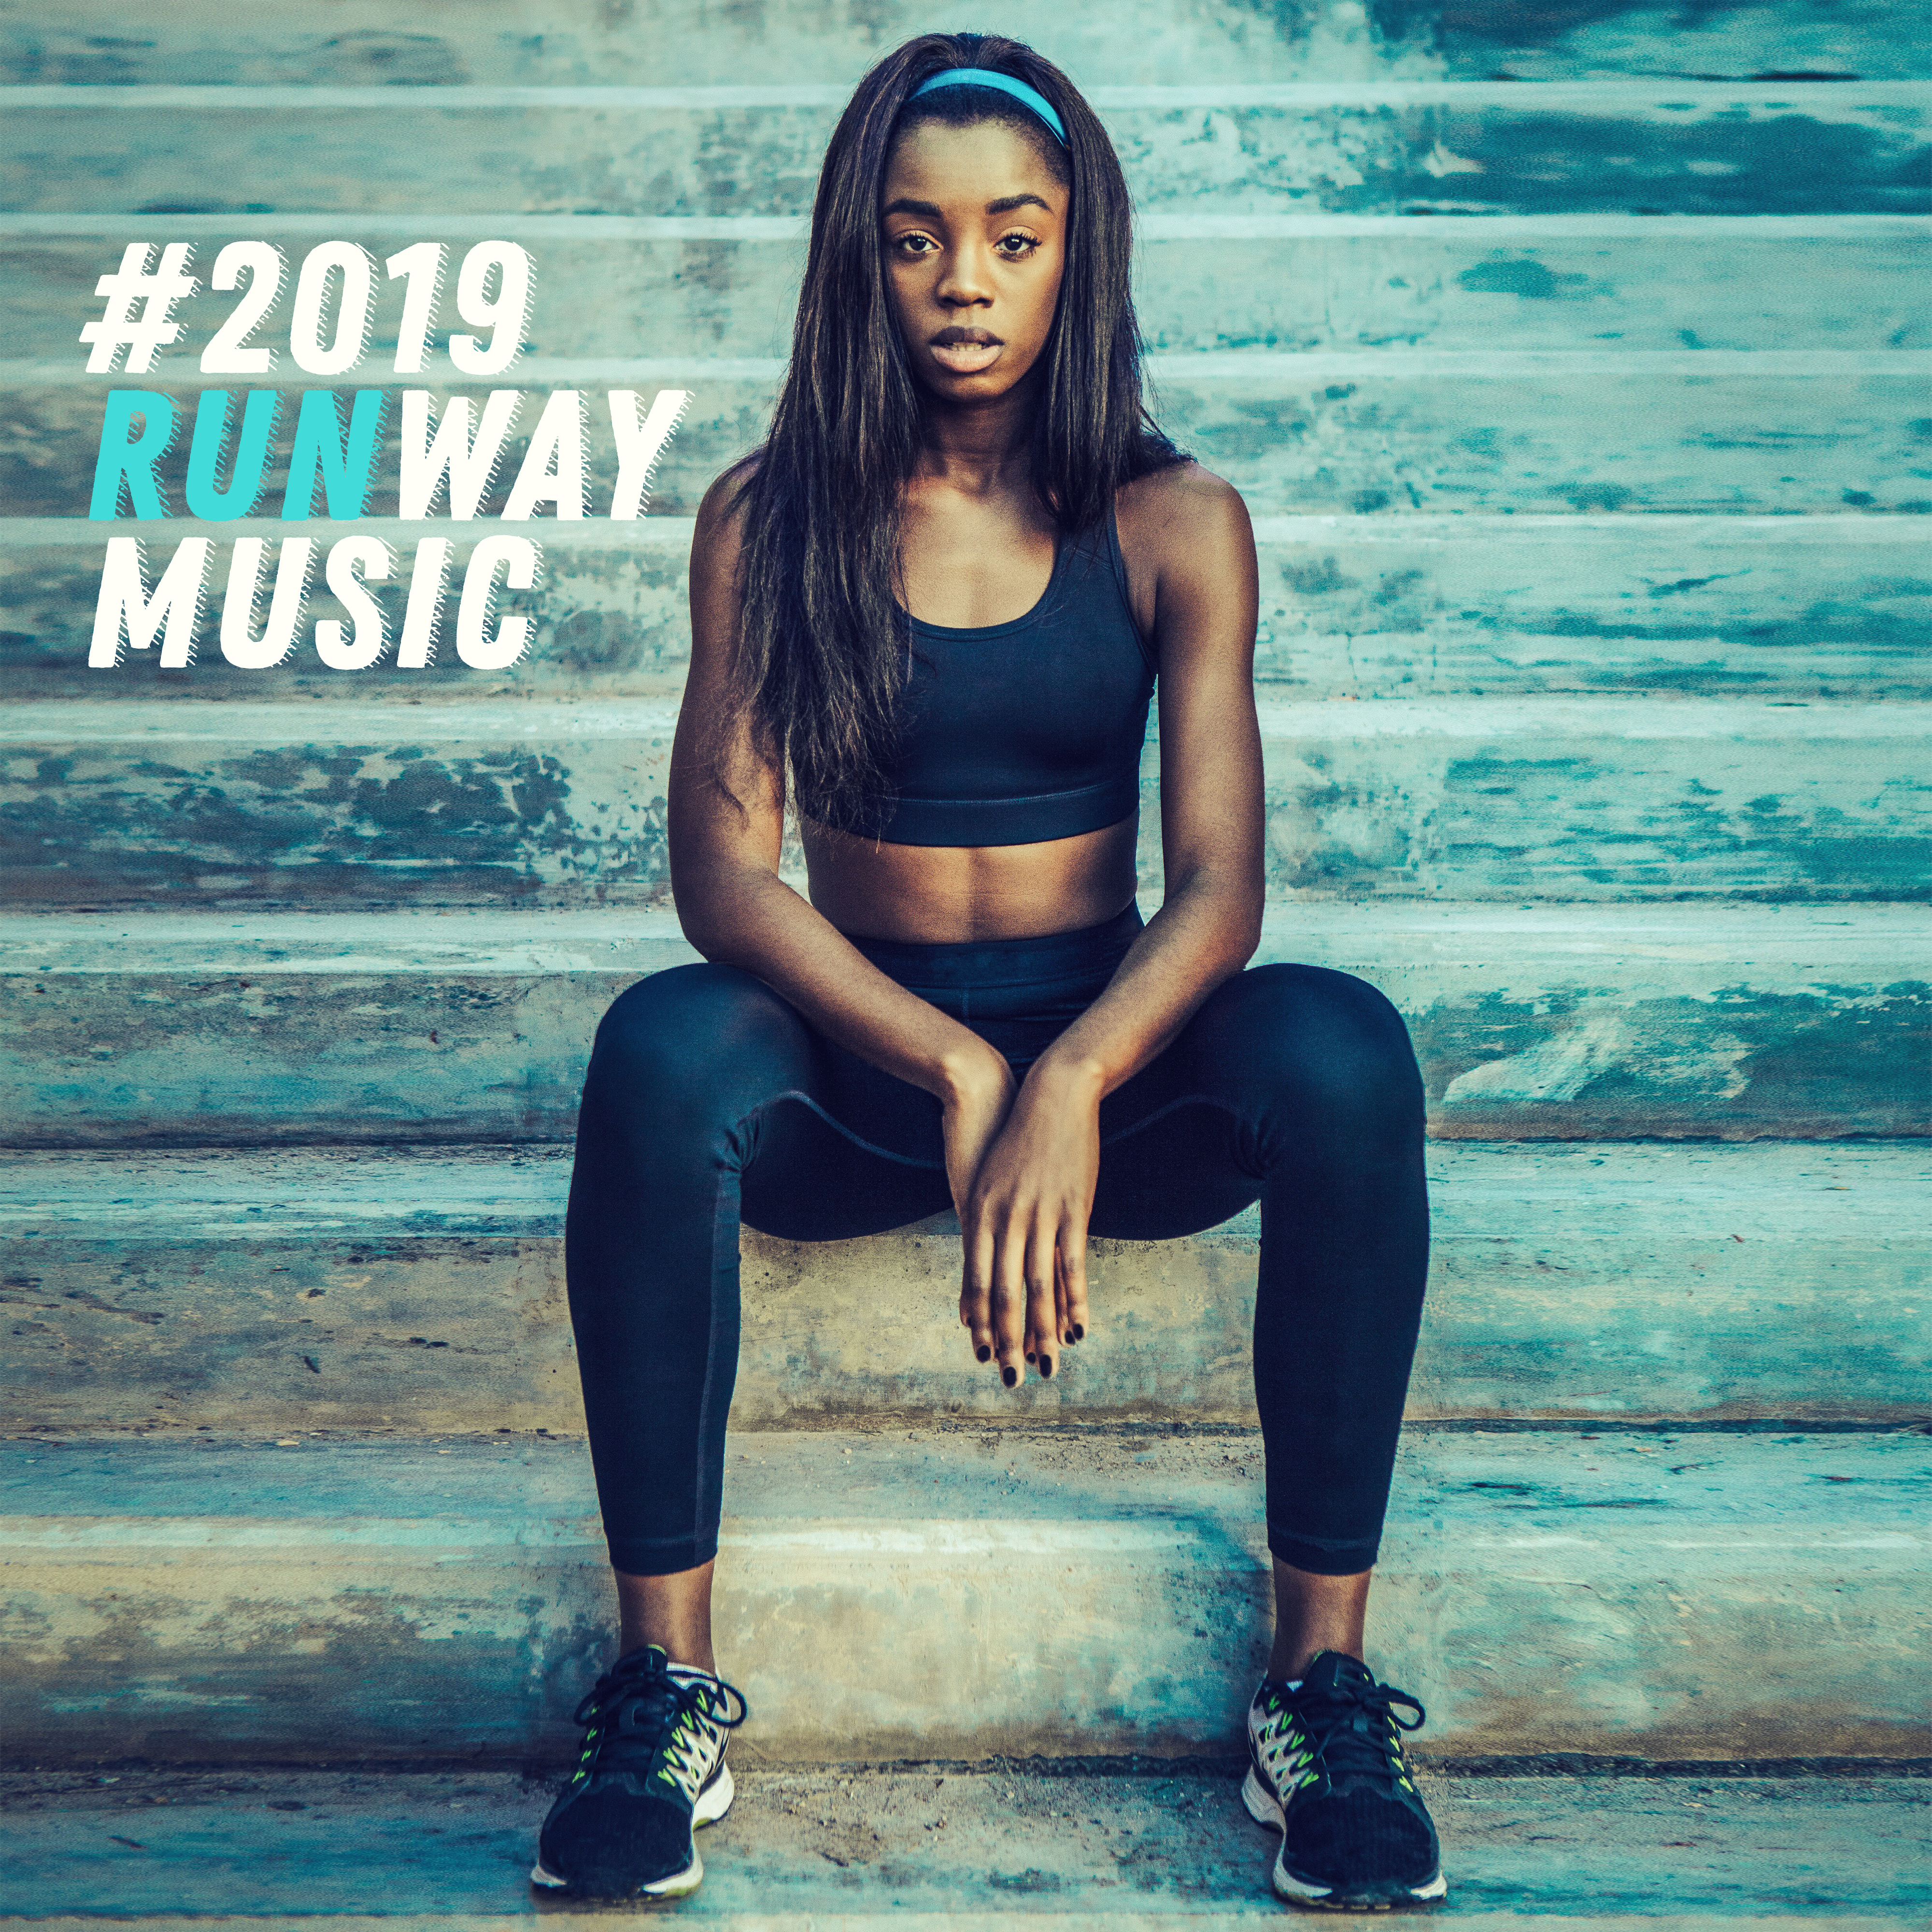 #2019 Runway Music